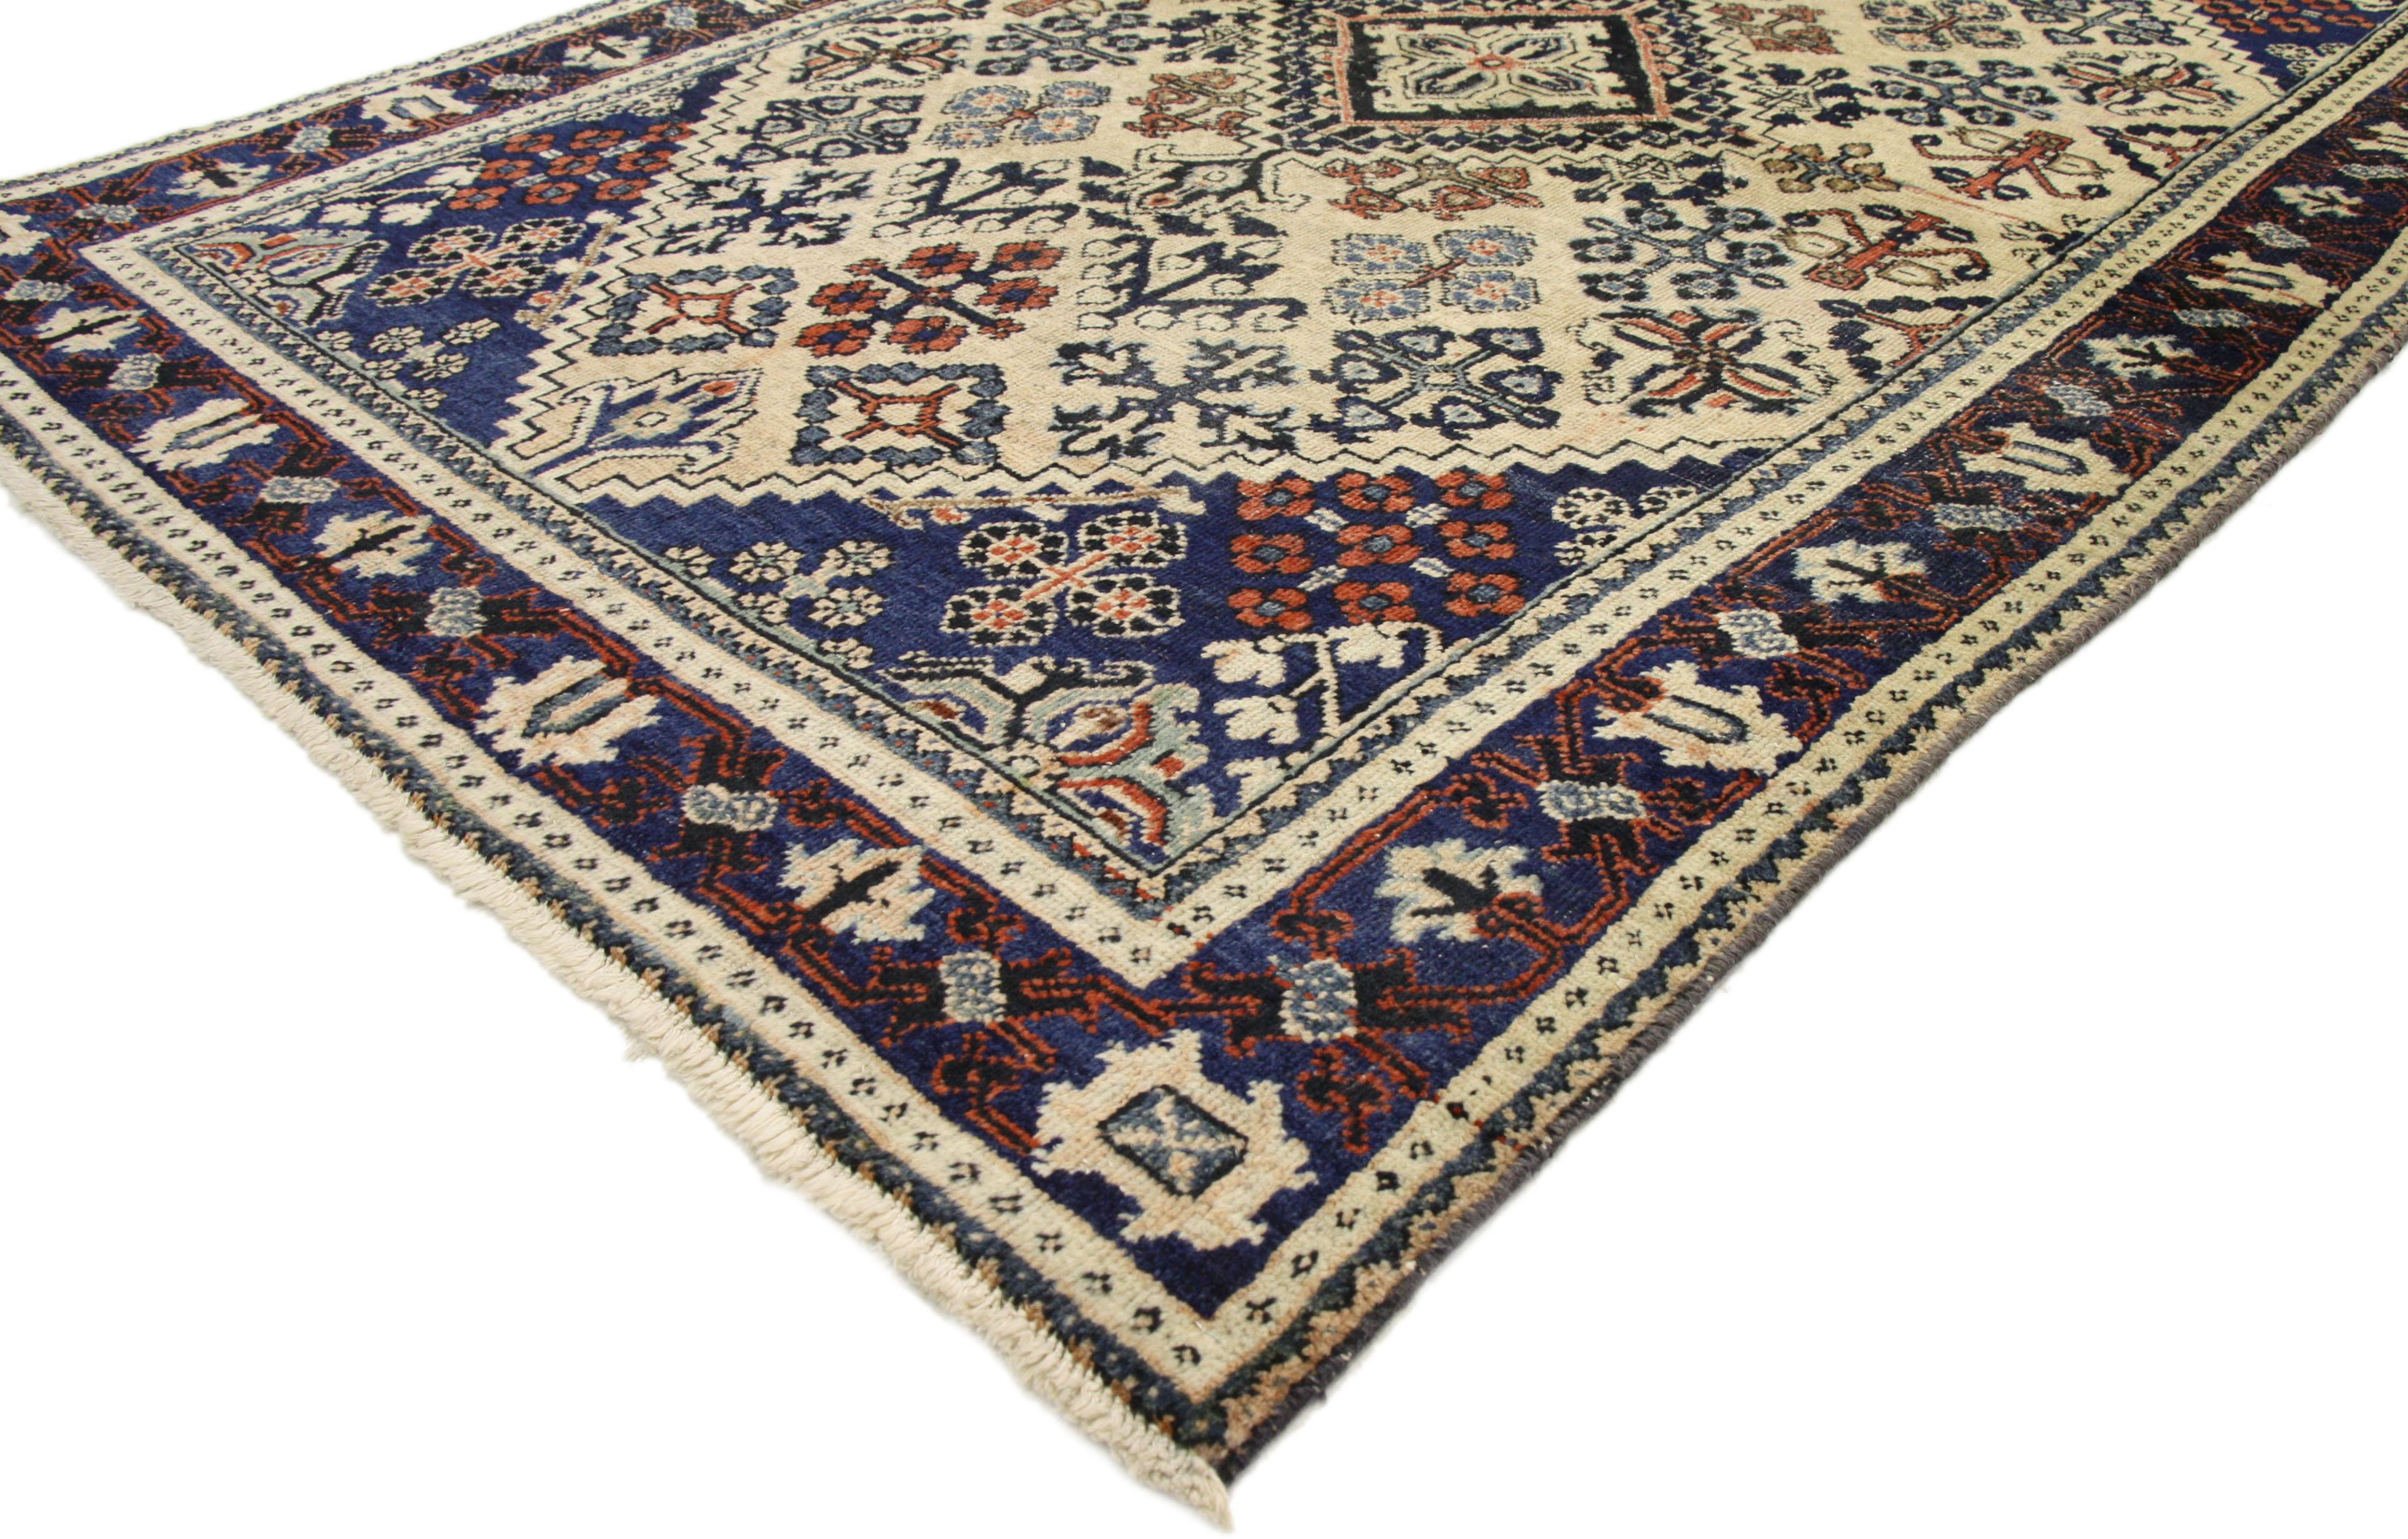 75217, tapis vintage Persan Joshegan. Avec des bleus brillants et des beiges chauds inspirés de l'Italie, combinés à des couleurs modernes et rustiques, ce tapis persan Joshegan noué à la main est bien équilibré et prêt à impressionner. Elle